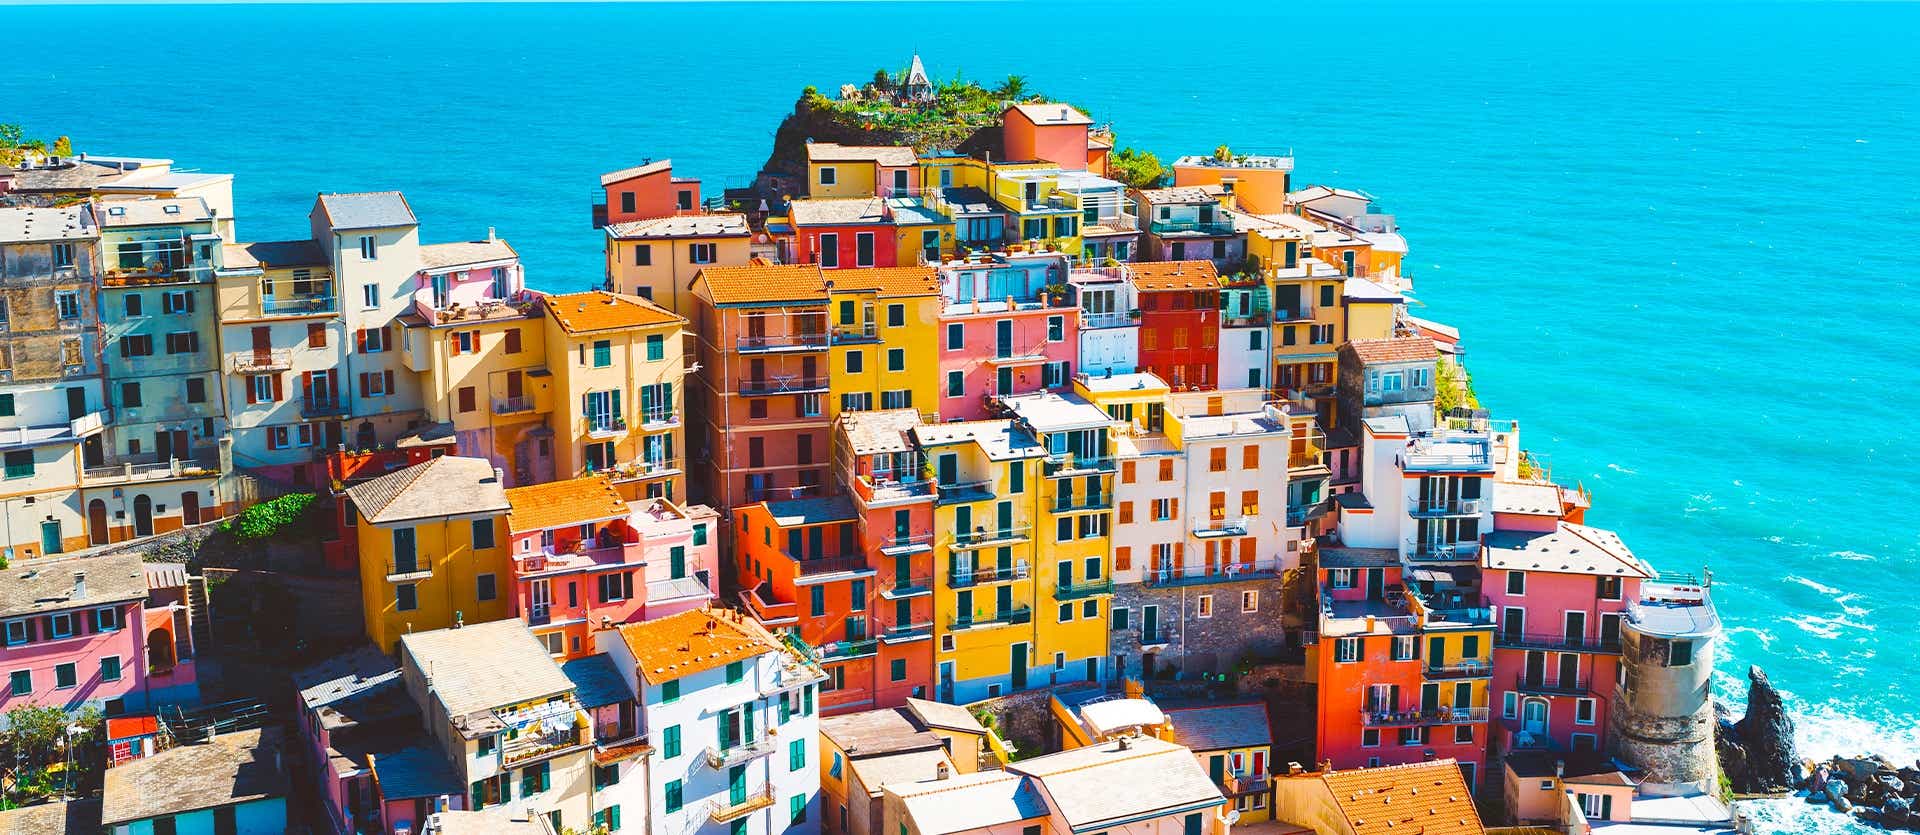 Cinque Terre <span class="iconos separador"></span> Italian Riviera